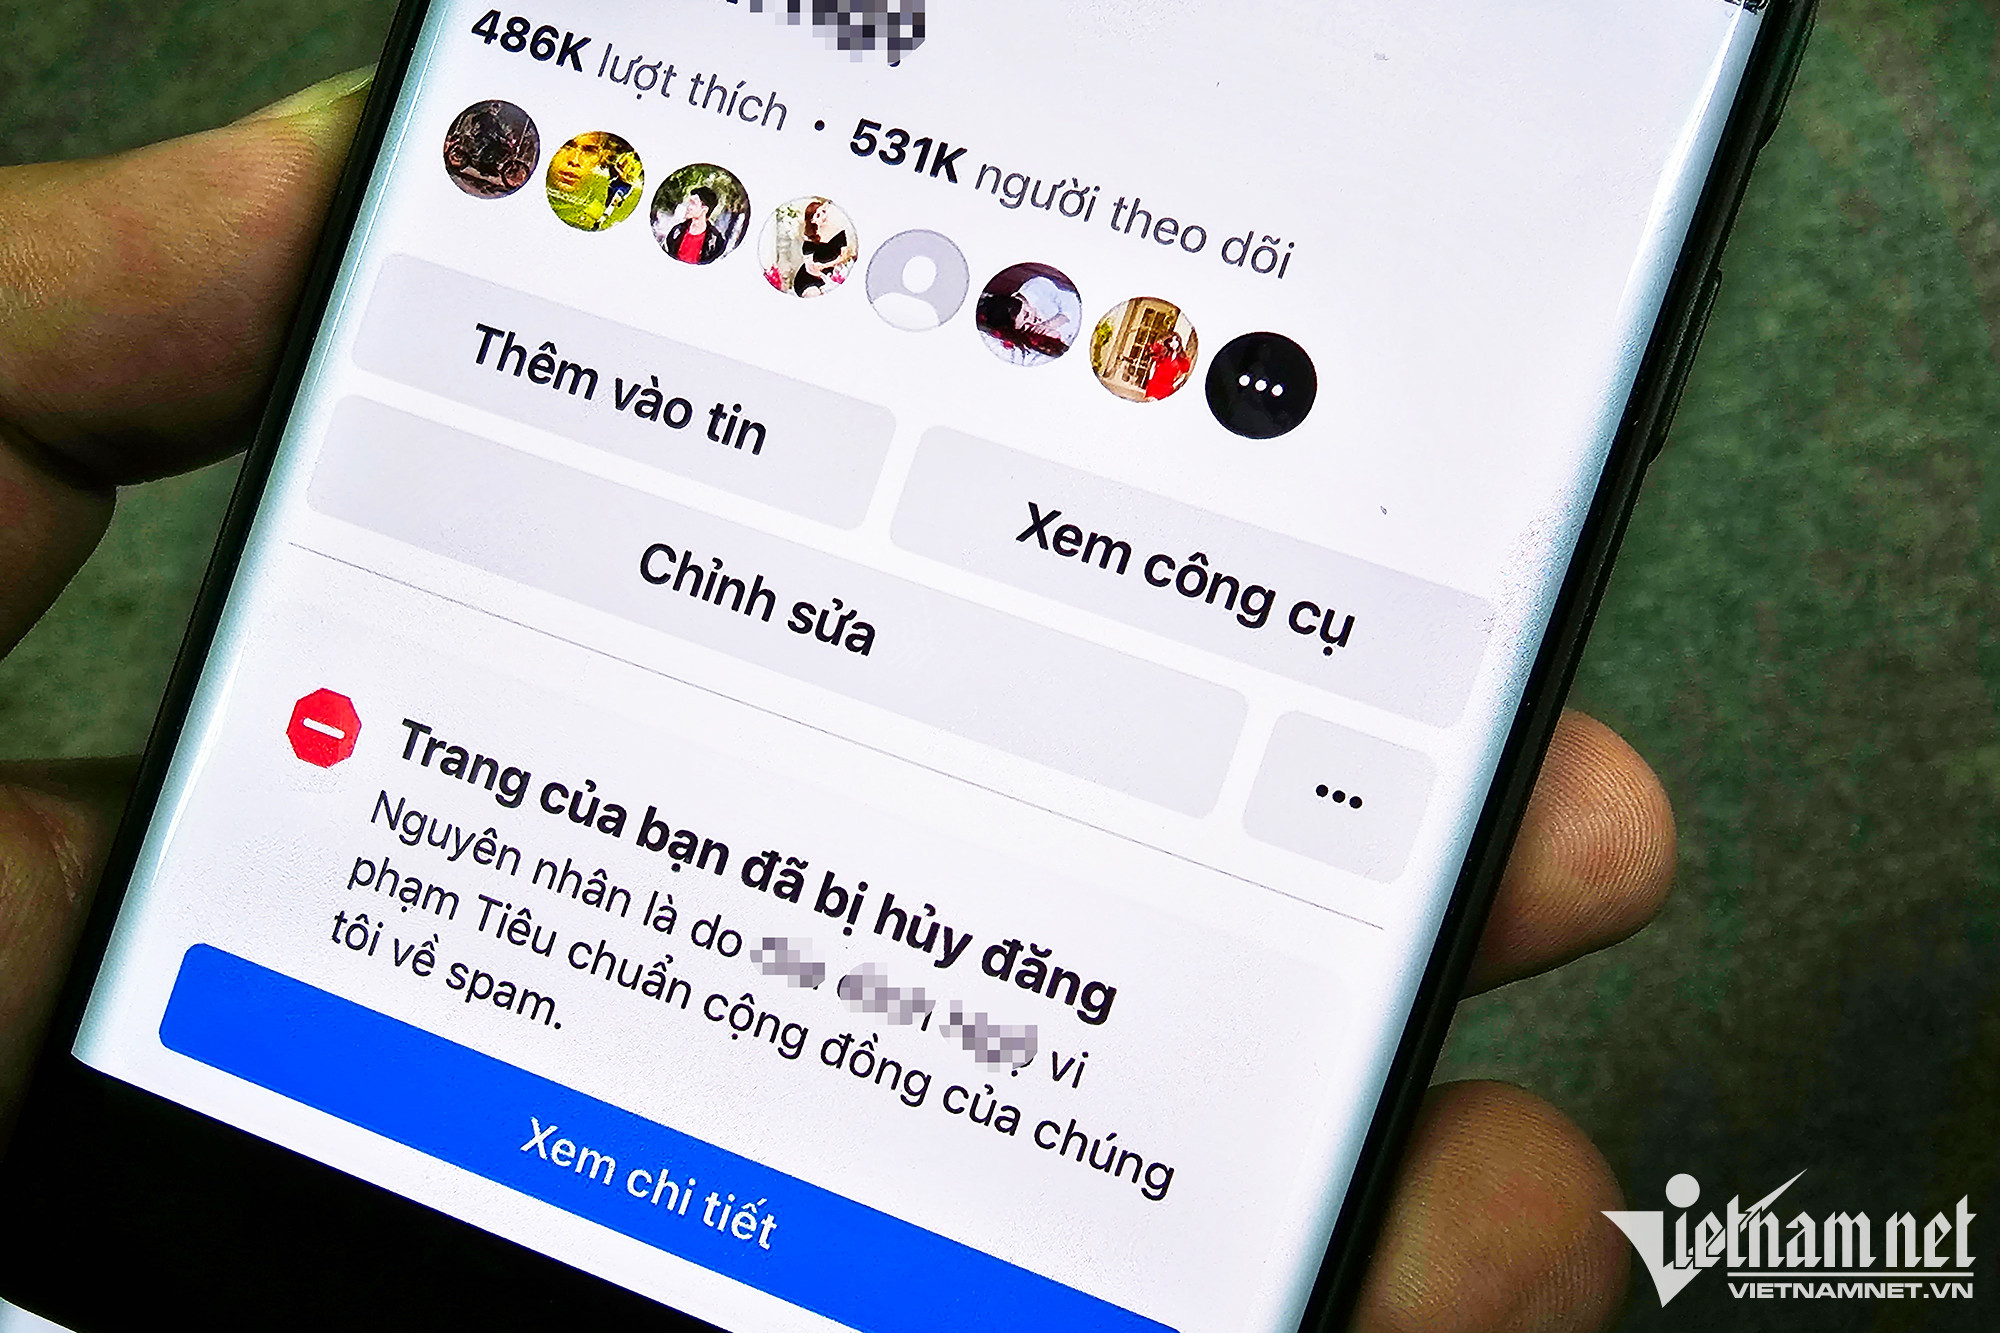 Hàng trăm fanpage Facebook Việt Nam bị khóa trong đêm